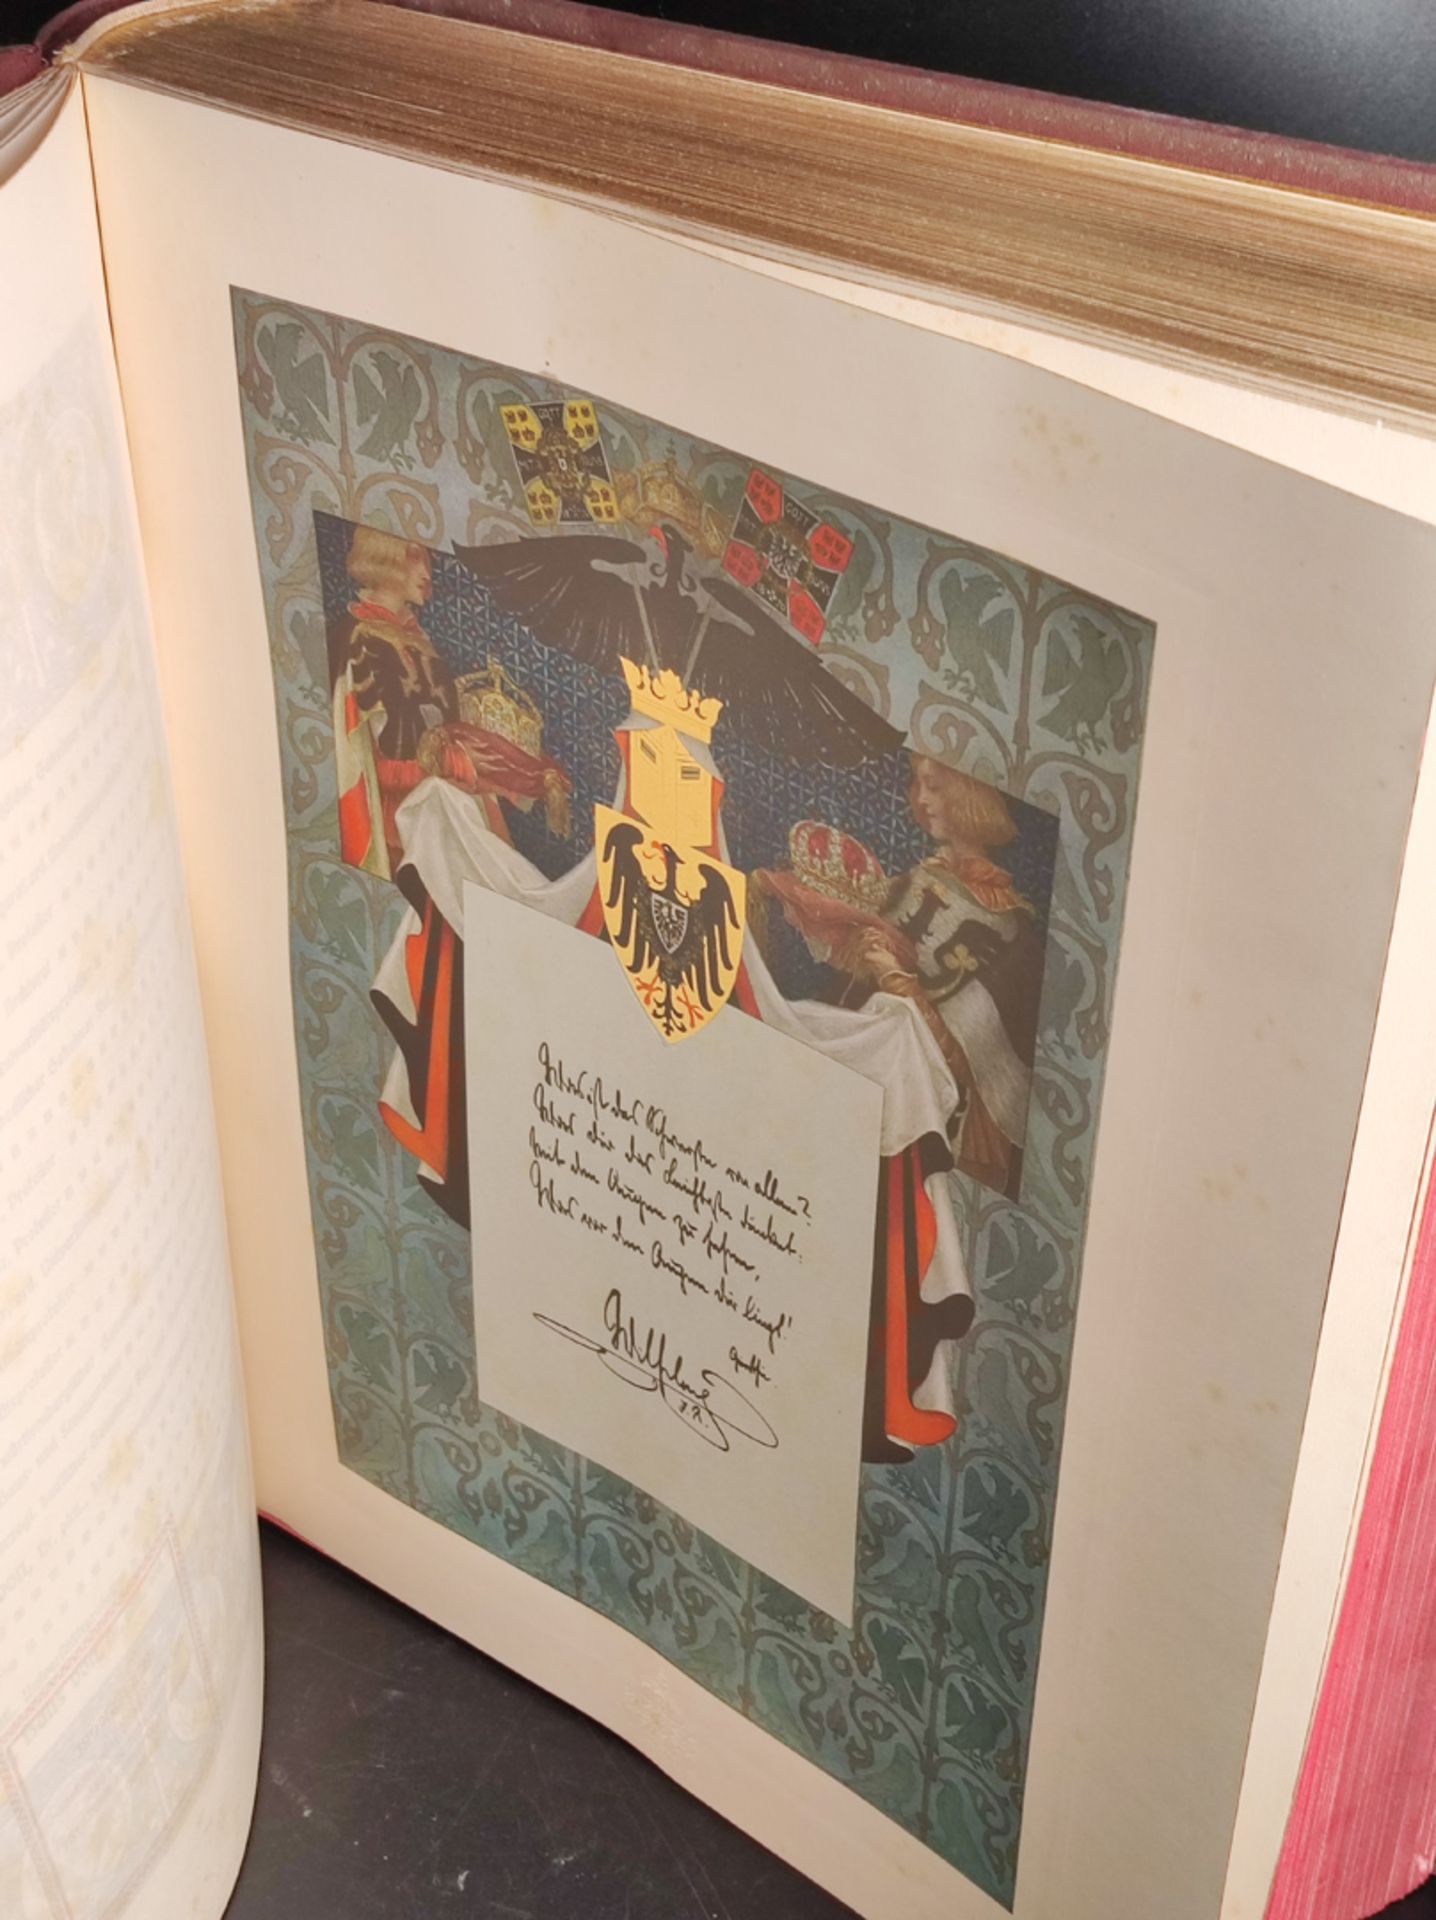 Prachtausgabe, Buch ”Deutsche Gedenkhalle”, veranstaltet von Max Herzig, mit Bildern aus der - Bild 3 aus 4